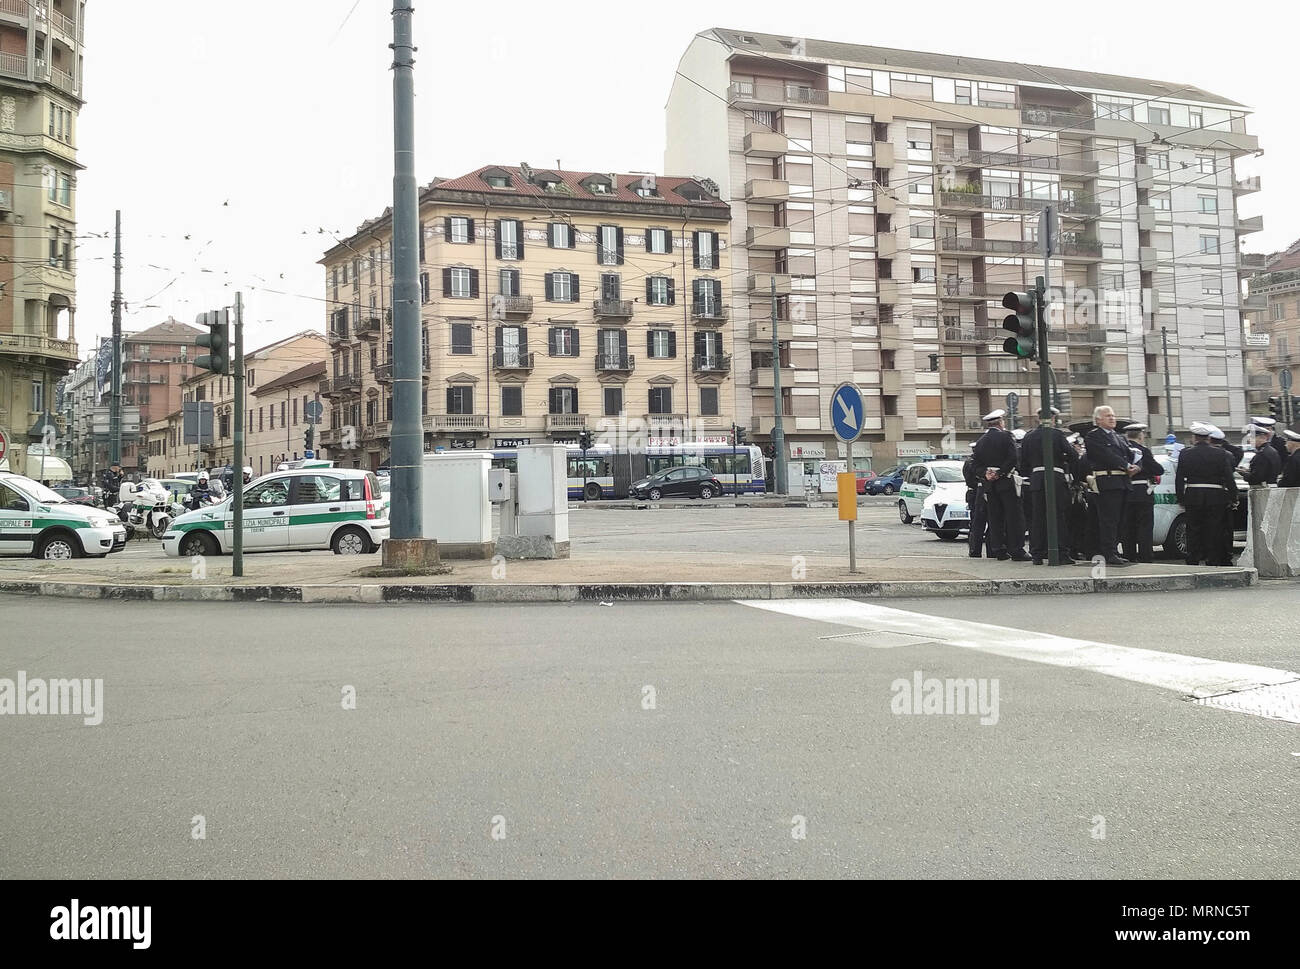 27 mai 2018 - Turin, Italy-May 27, 2018 : l'opération de désamorçage de l'armée italienne d'une bombe de la Seconde Guerre mondiale a trouvé dans la zone Lingotto de Turin Crédit : Stefano Guidi/ZUMA/Alamy Fil Live News Banque D'Images